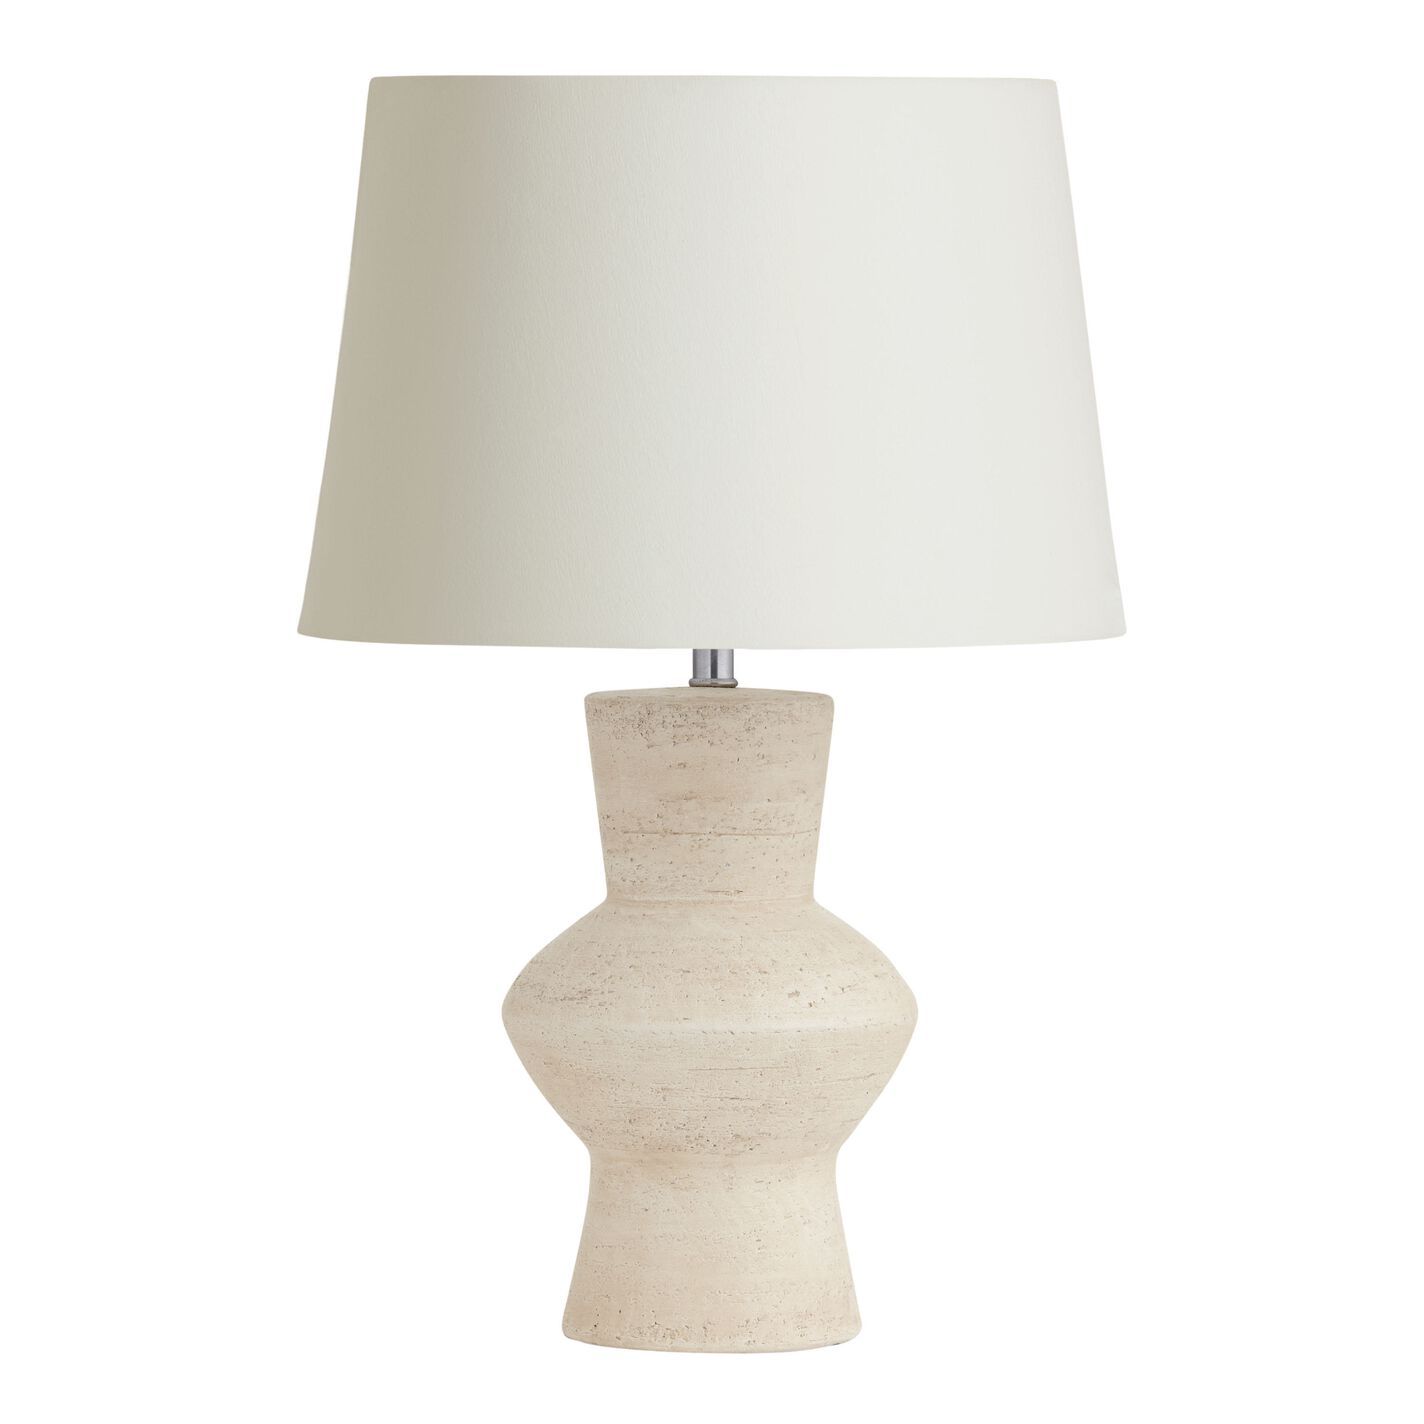 White Terracotta Stacked Table Lamp Base | World Market